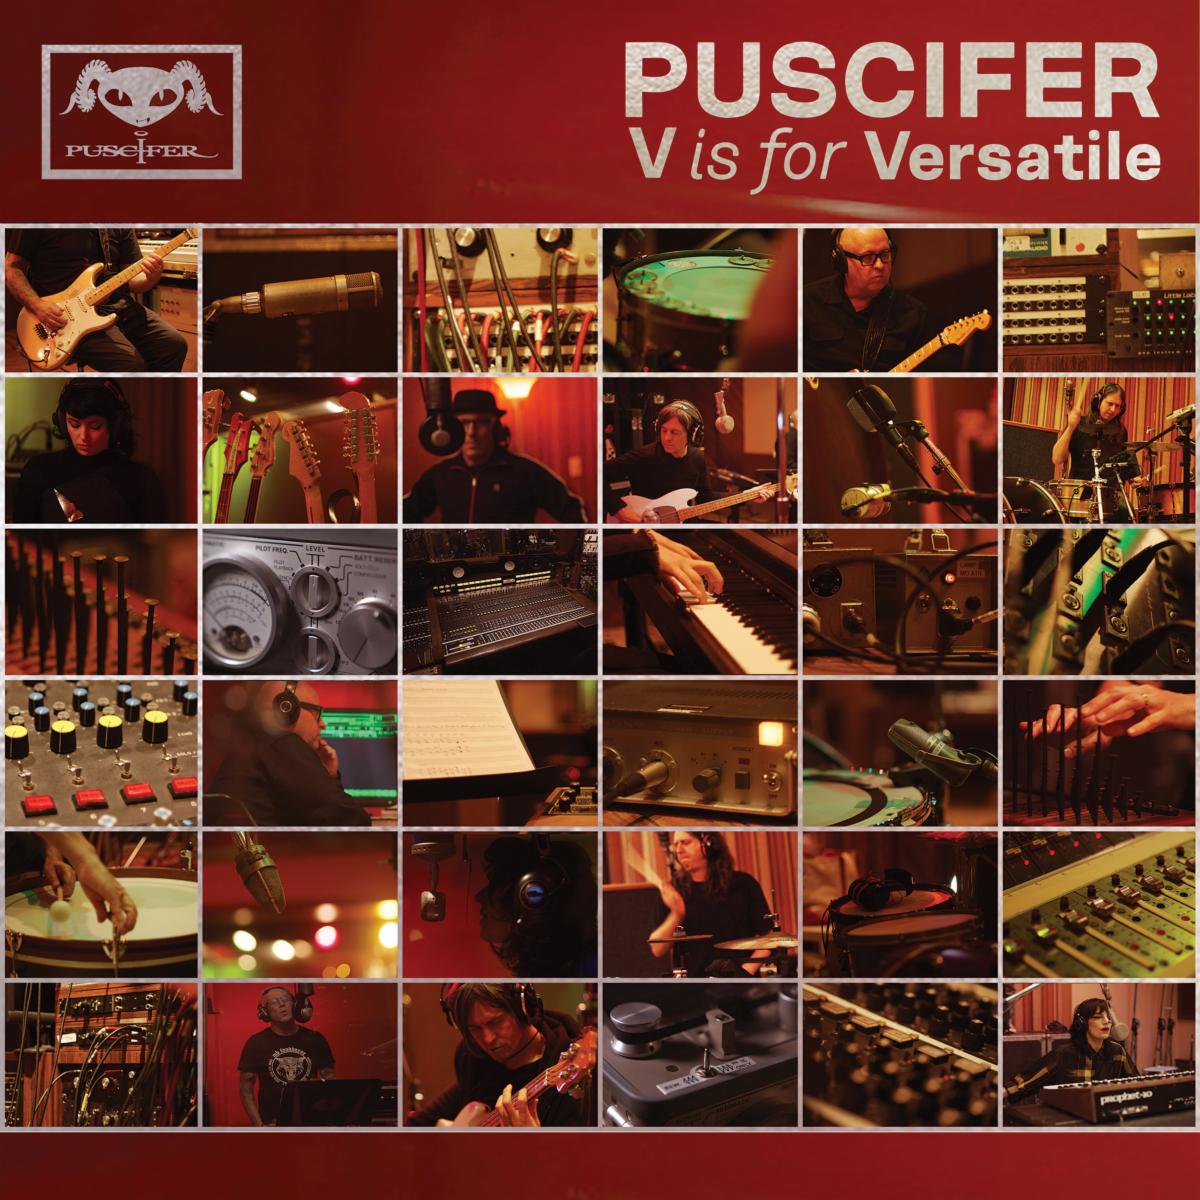 Puscifer Release "V is for Versatile" & "Parole Violator" Albums; Watch "Indigo Children" Video